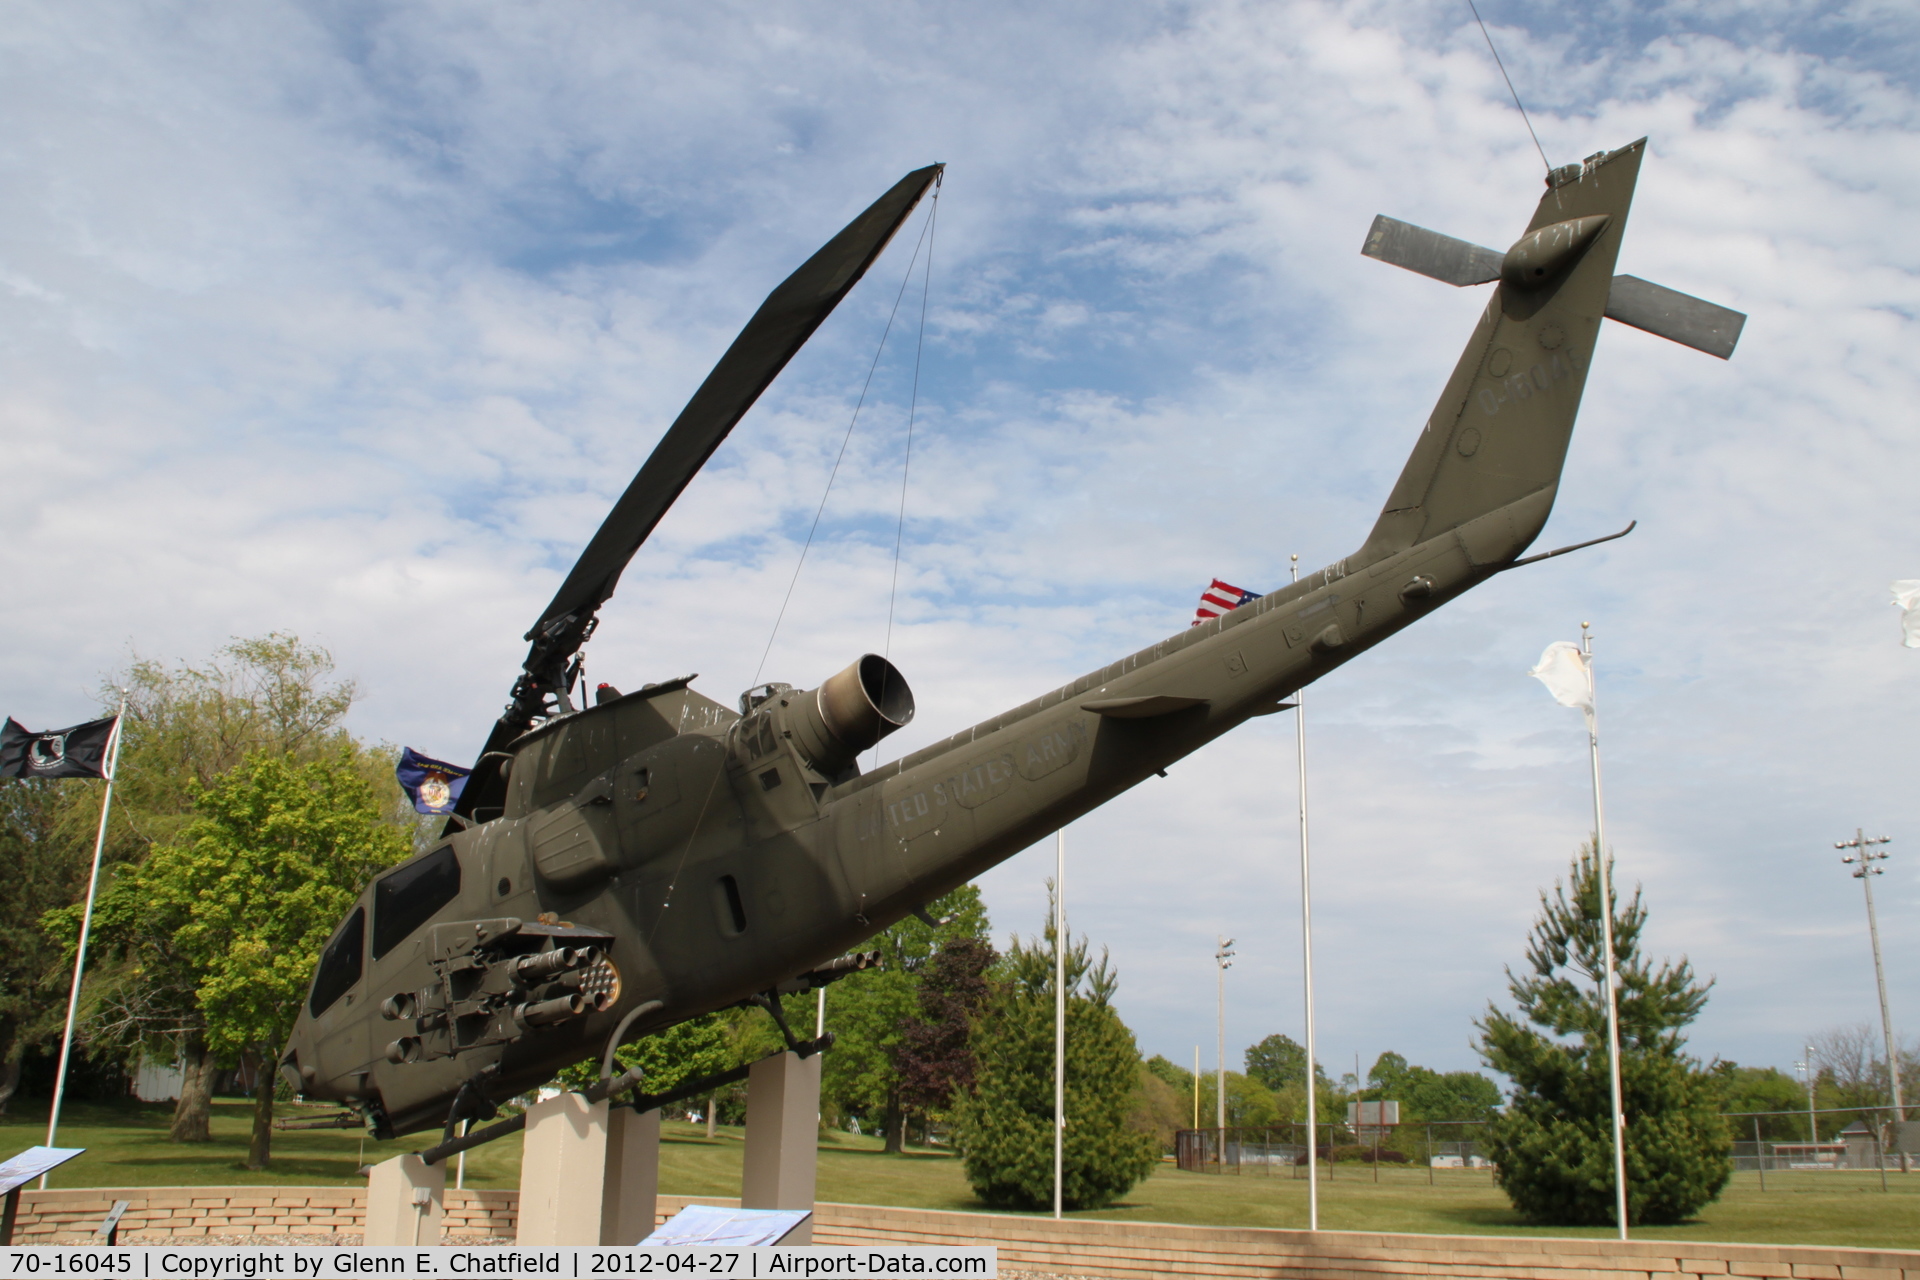 70-16045, 1972 Bell AH-1S Cobra C/N 20989, Veteran's memorial in Washington Park